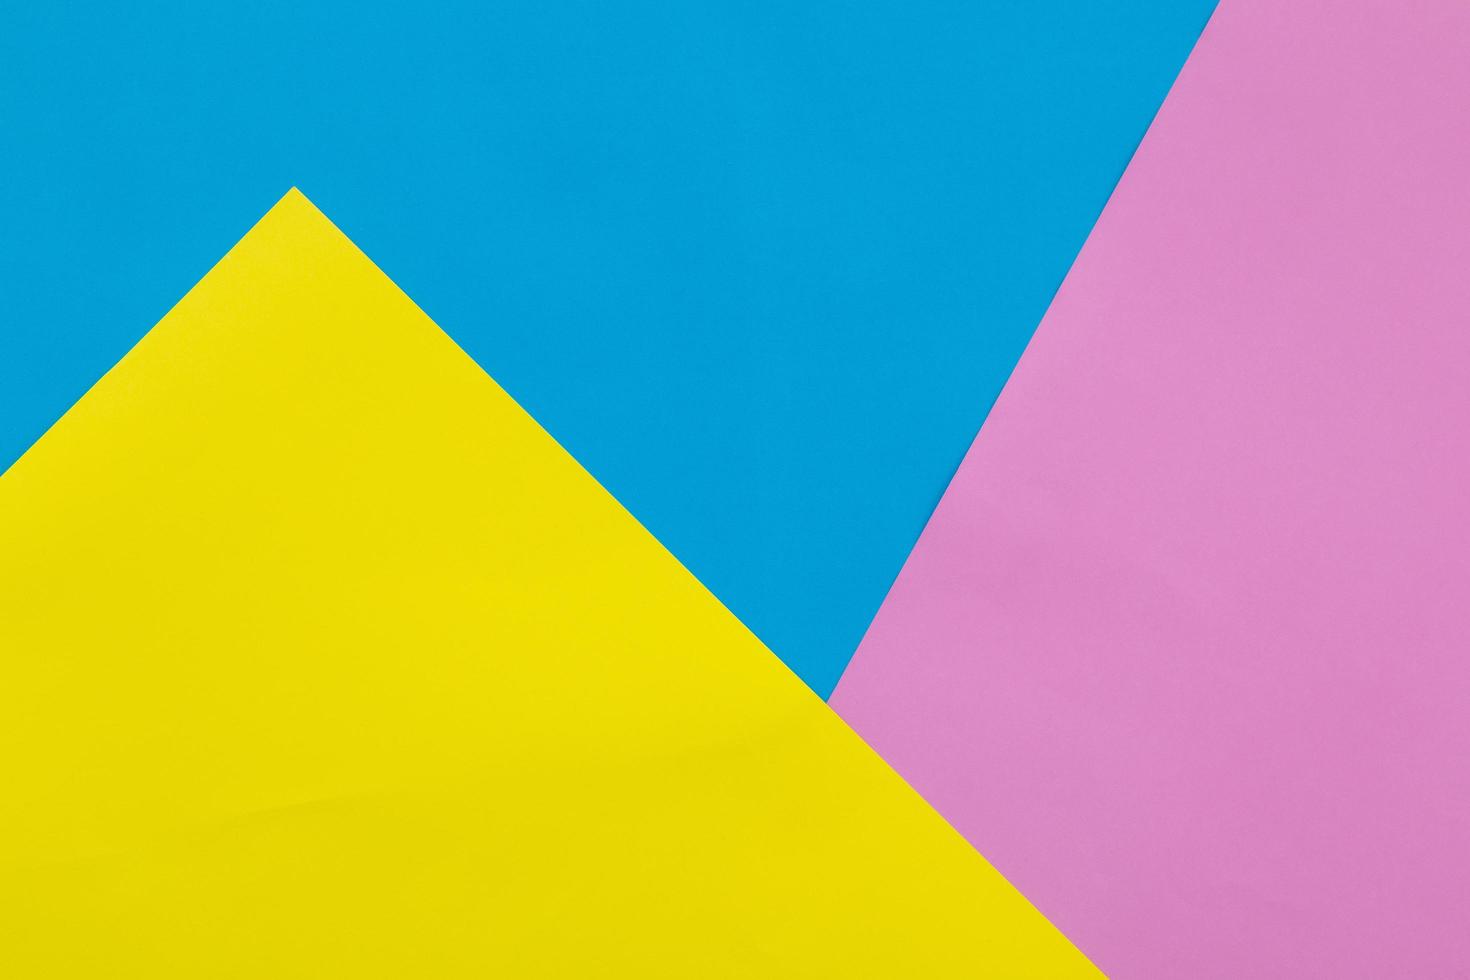 sfondo colorato di texture di carta pastello giallo, blu e rosa foto